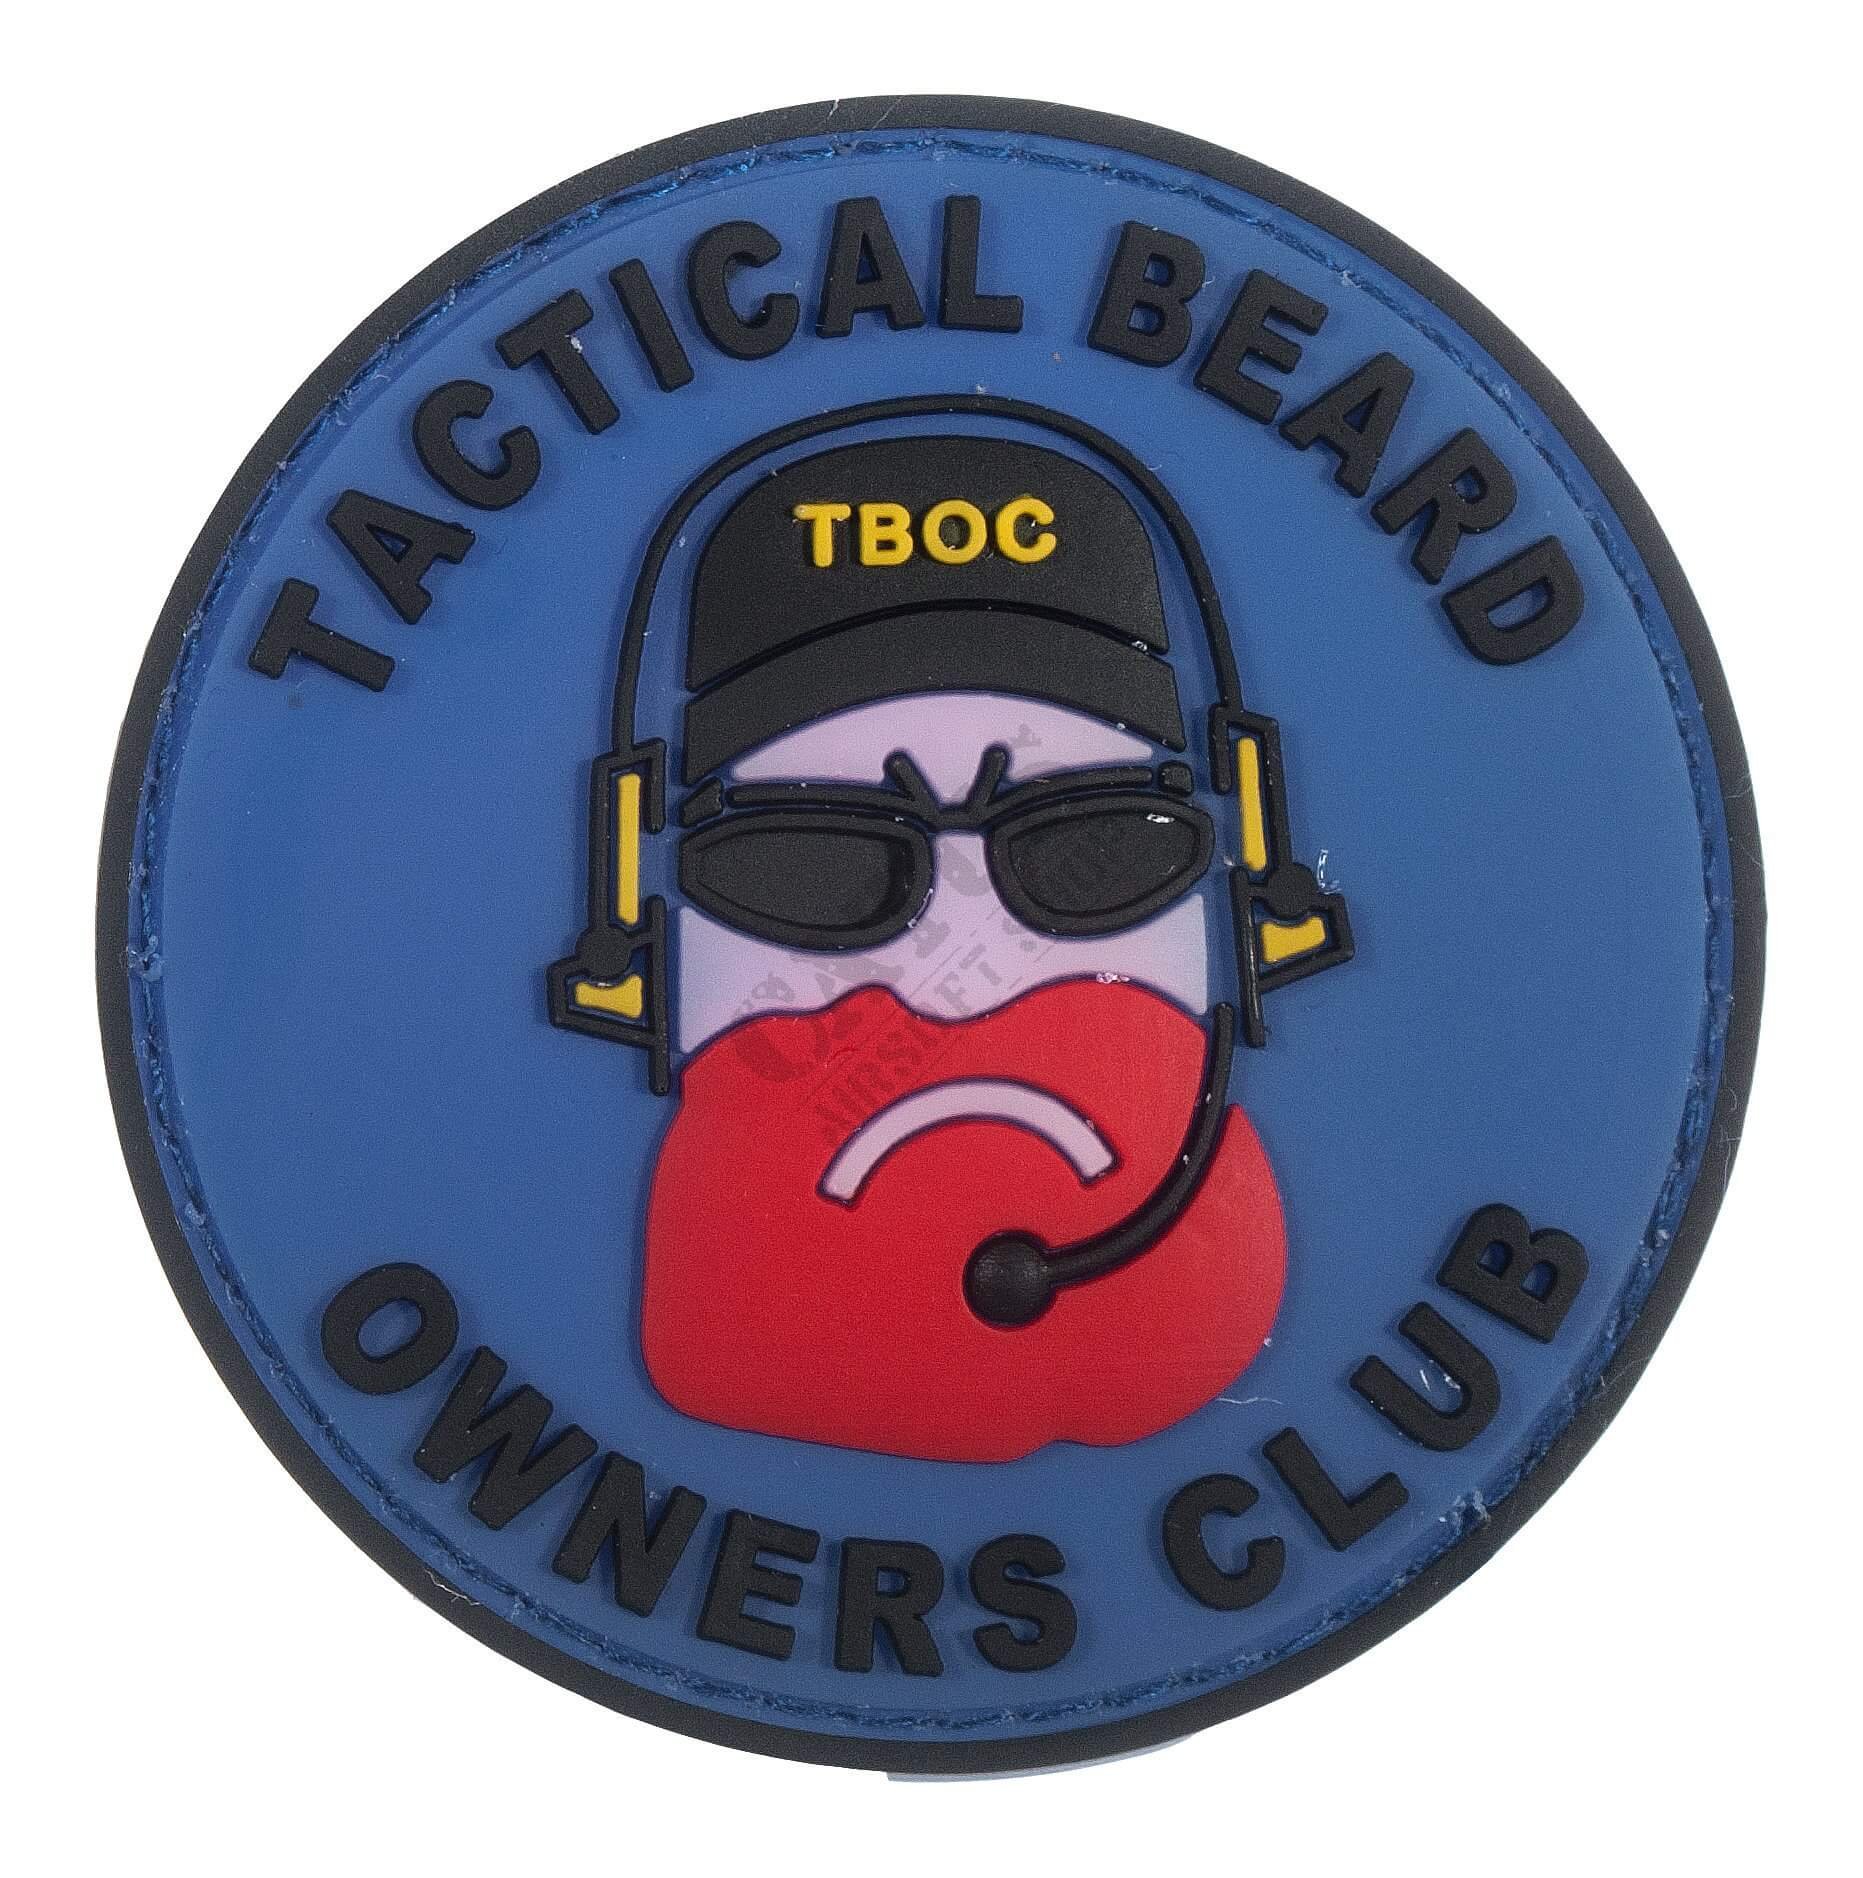 DA Tactical Beard Owners Club Patch